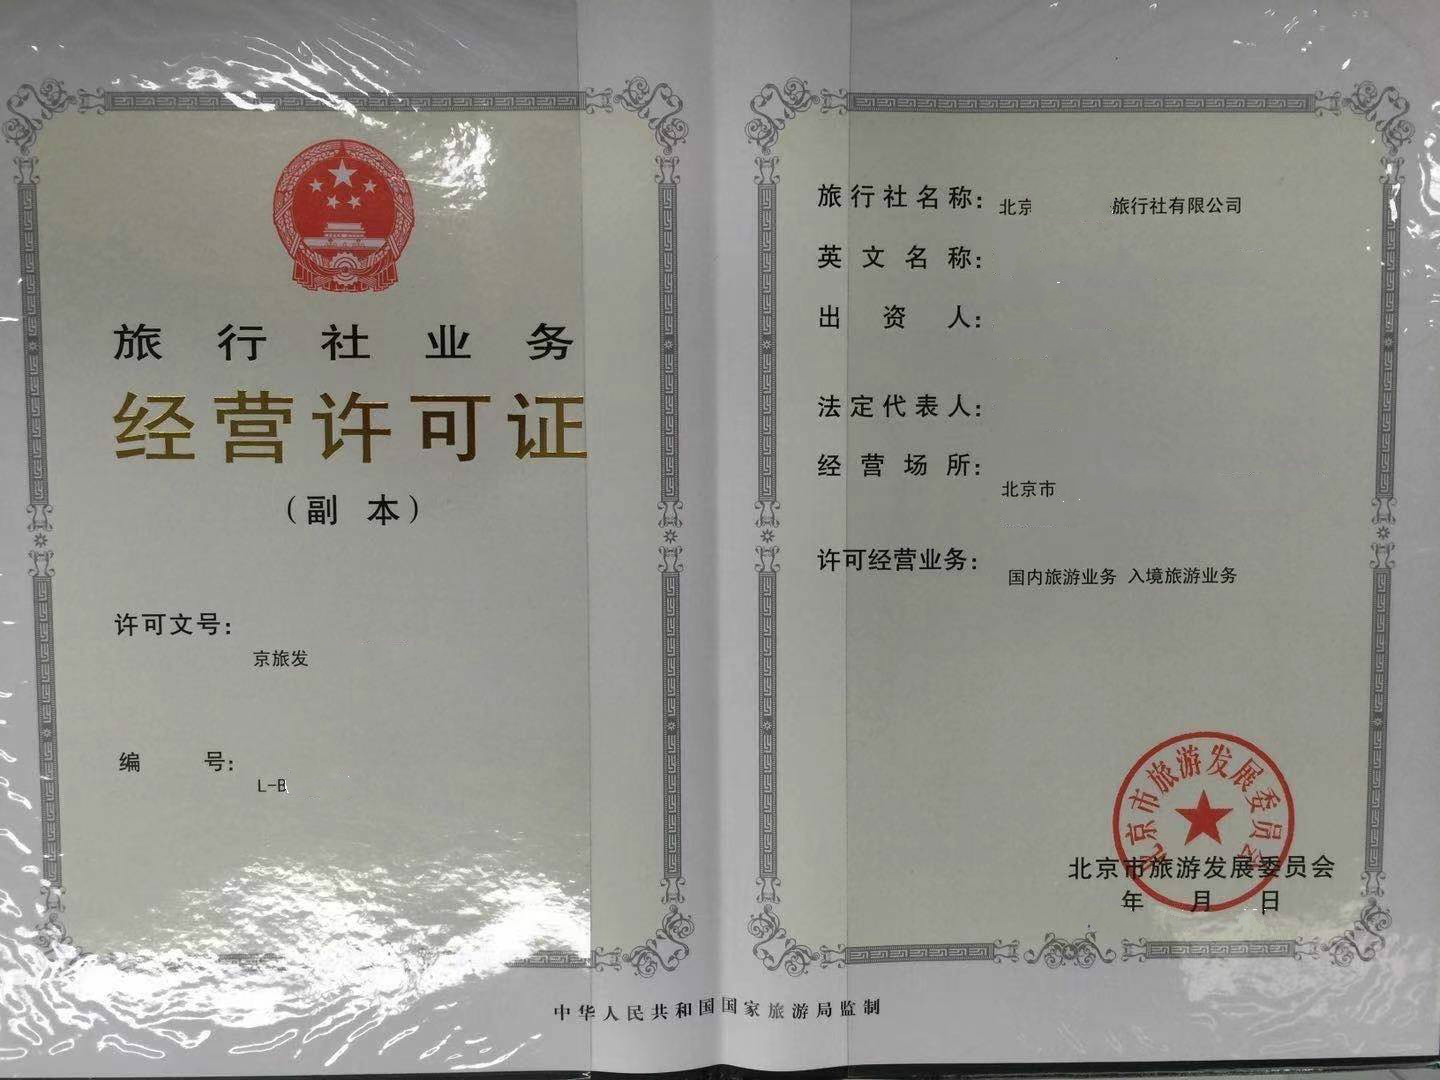 2021年北京西城区一手审批旅行社经营许可证旅游公司注册